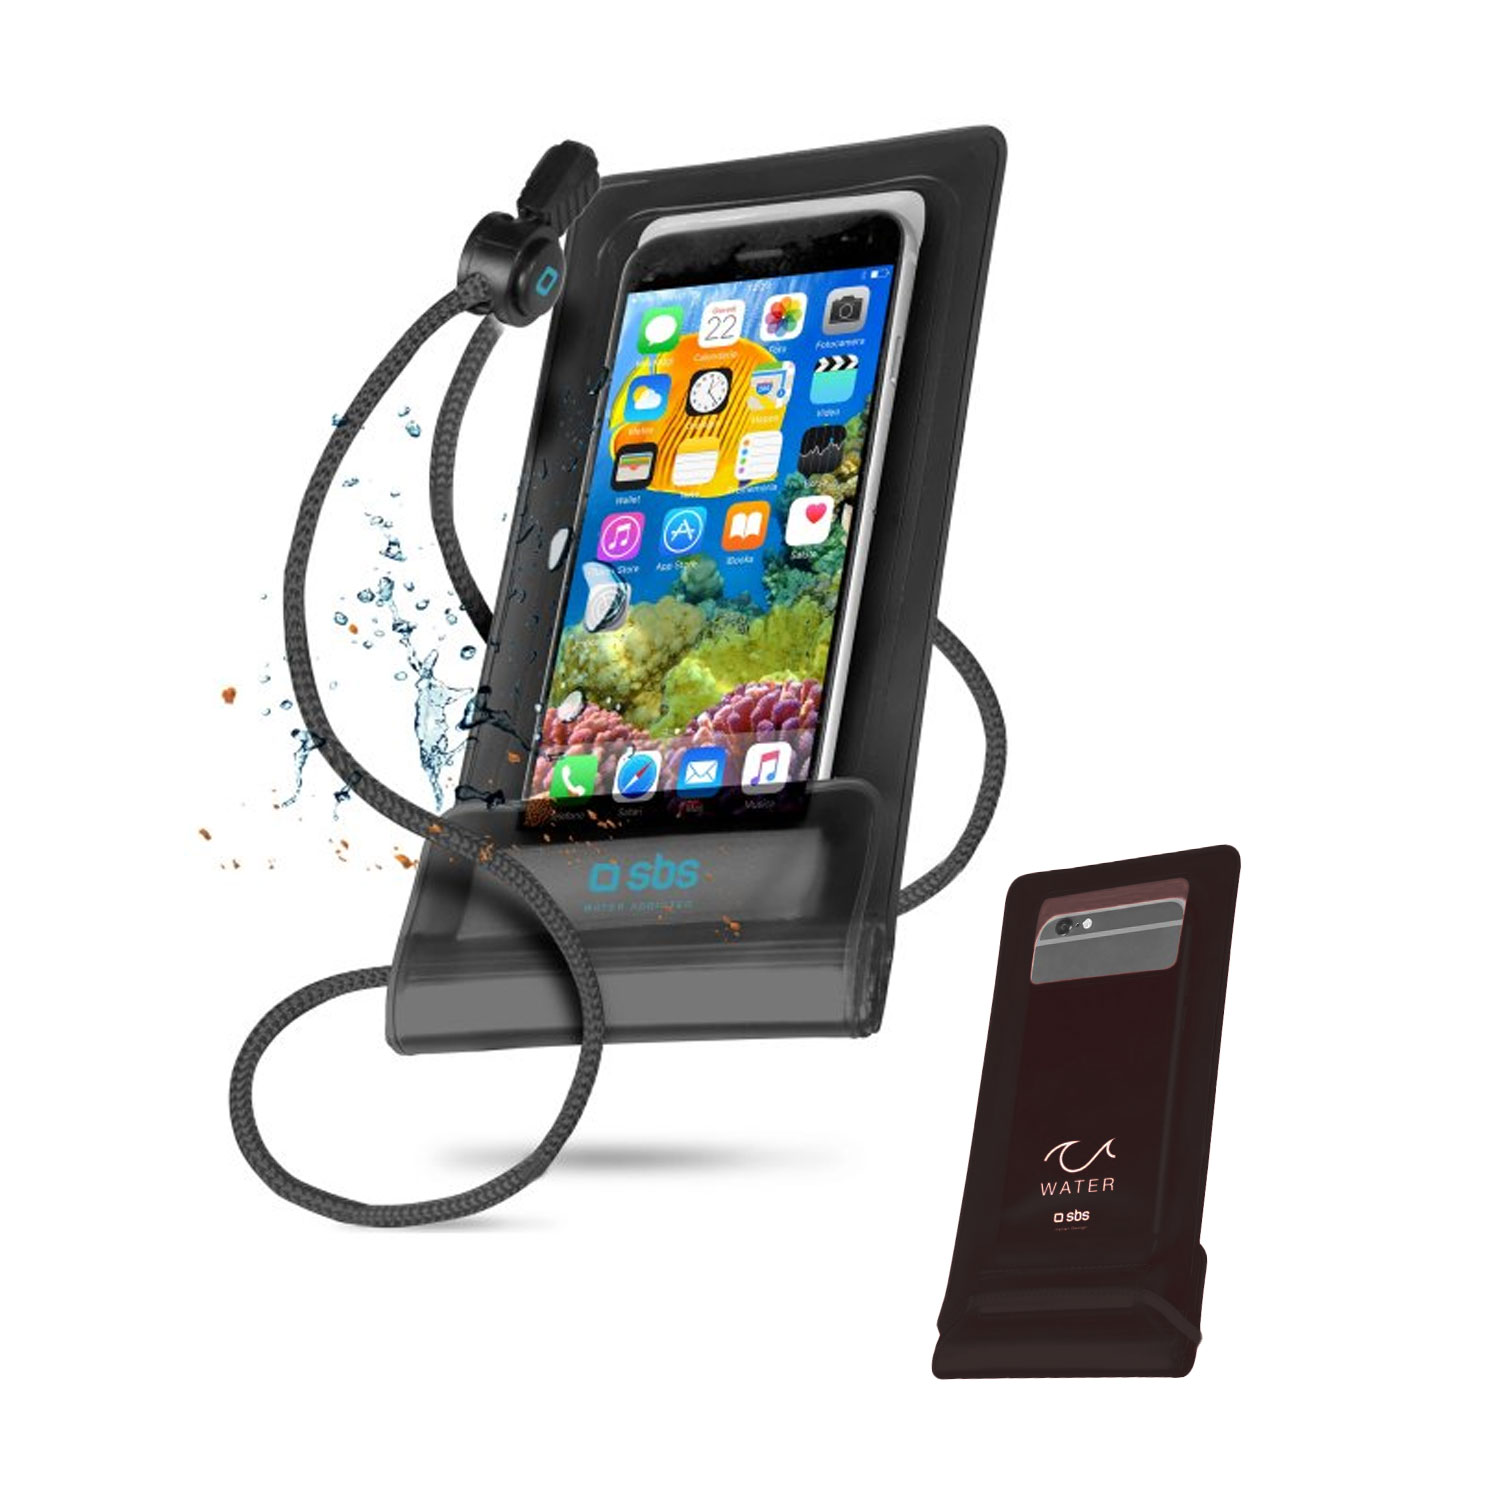 Wasserdichte Smartphone-Hülle bis 6,5 Zoll, schwarz inklusive Umhängeschnur